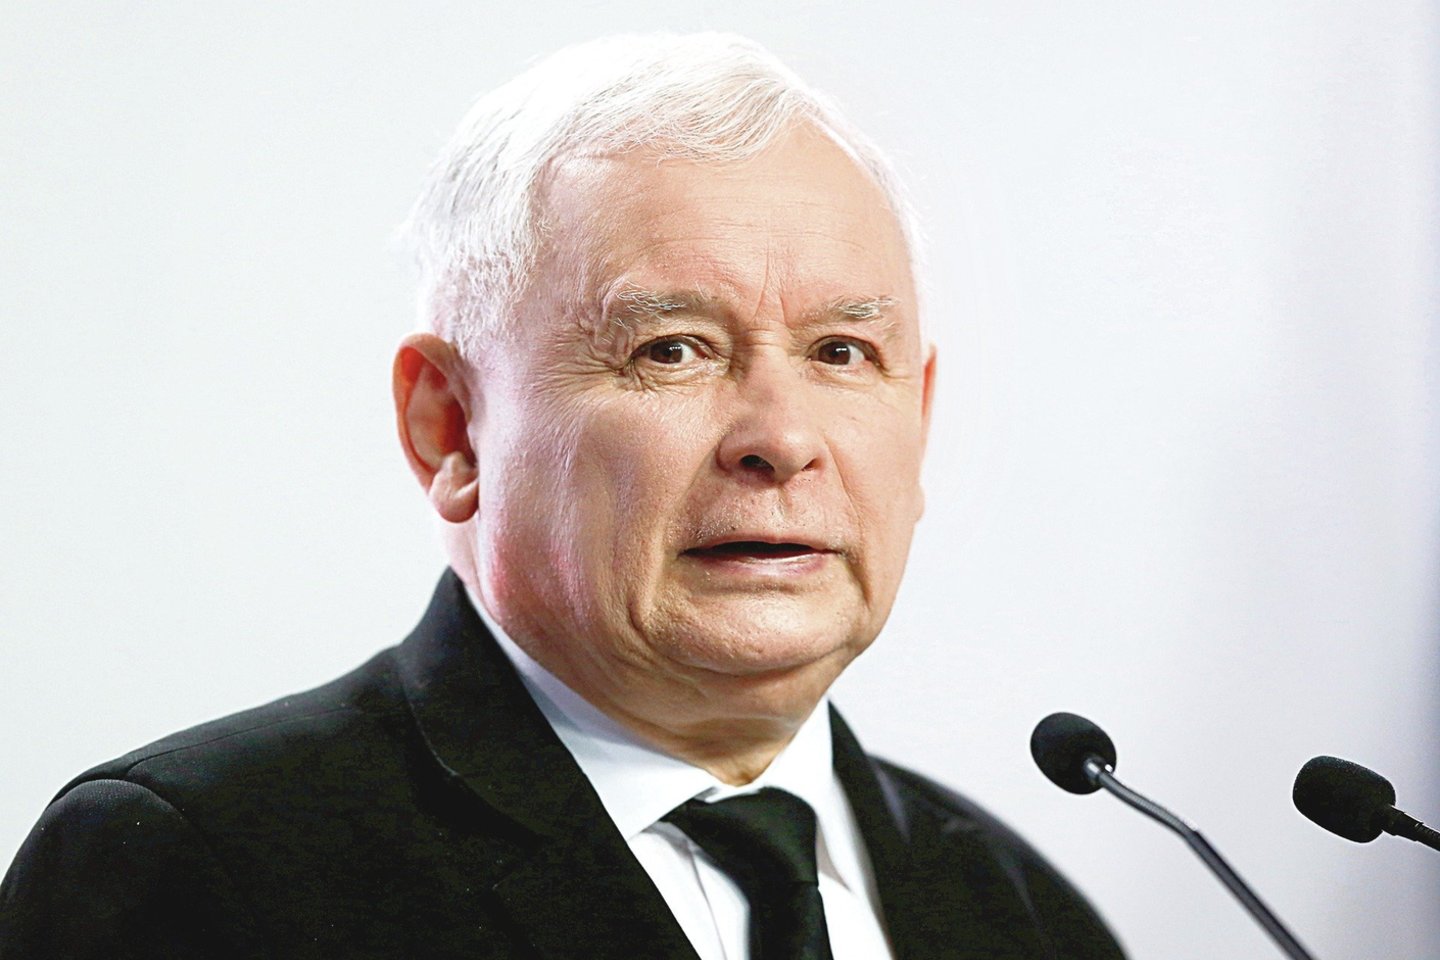 Lenkijos valdančiosios partijos lyderis penktadienį pasisakė prieš šalies prisijungimą prie bendros Europos valiutos euro.